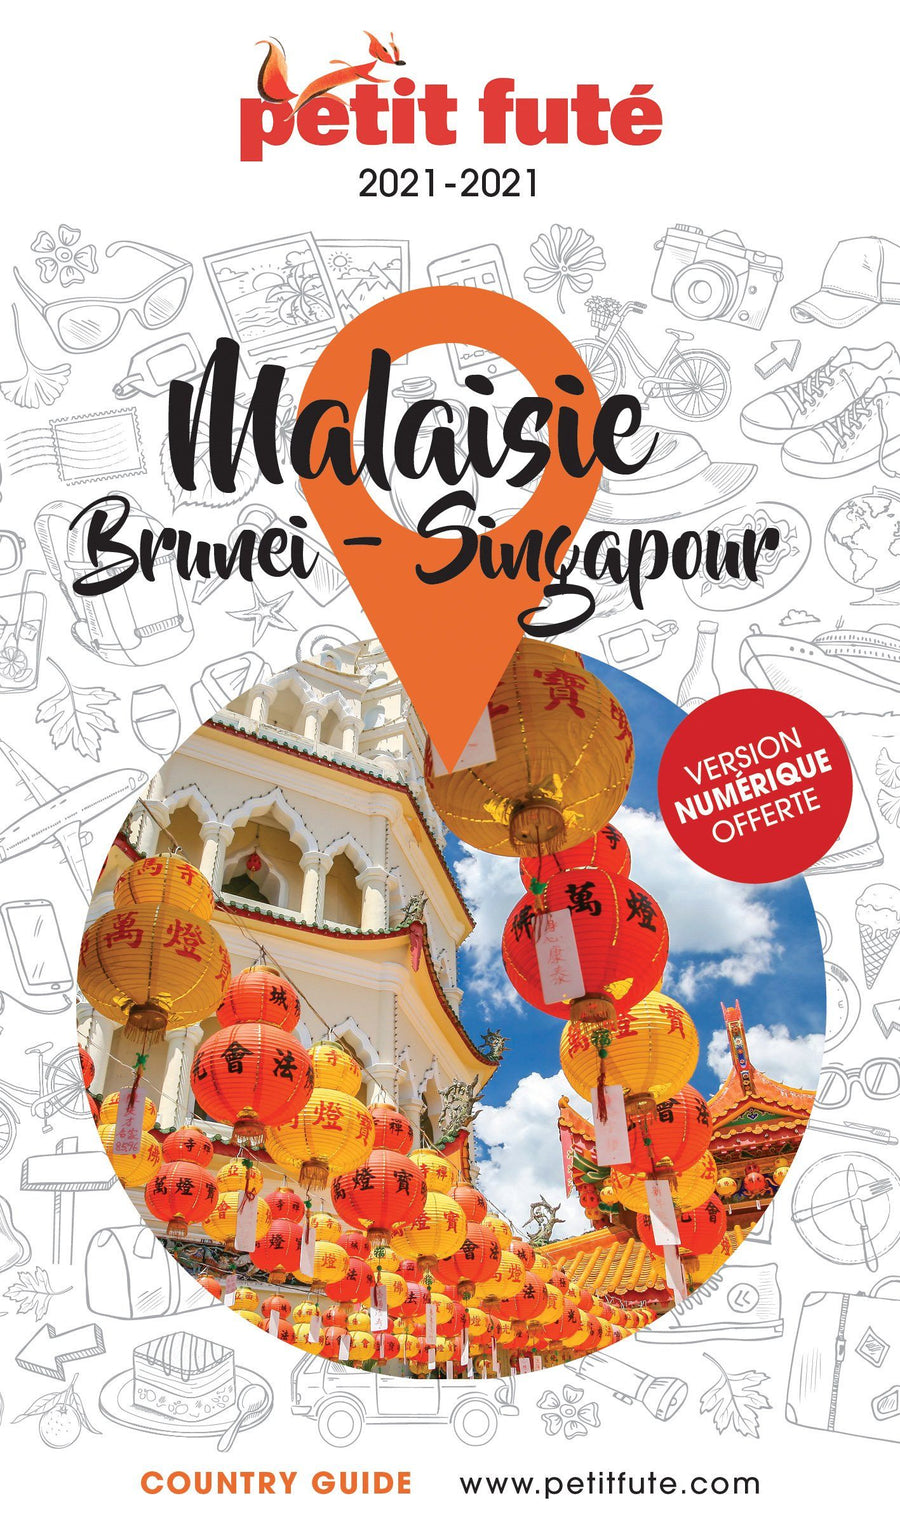 Guide de voyage - Malaisie, Brunei, Singapour 2020/21 | Petit Futé guide de voyage Petit Futé 